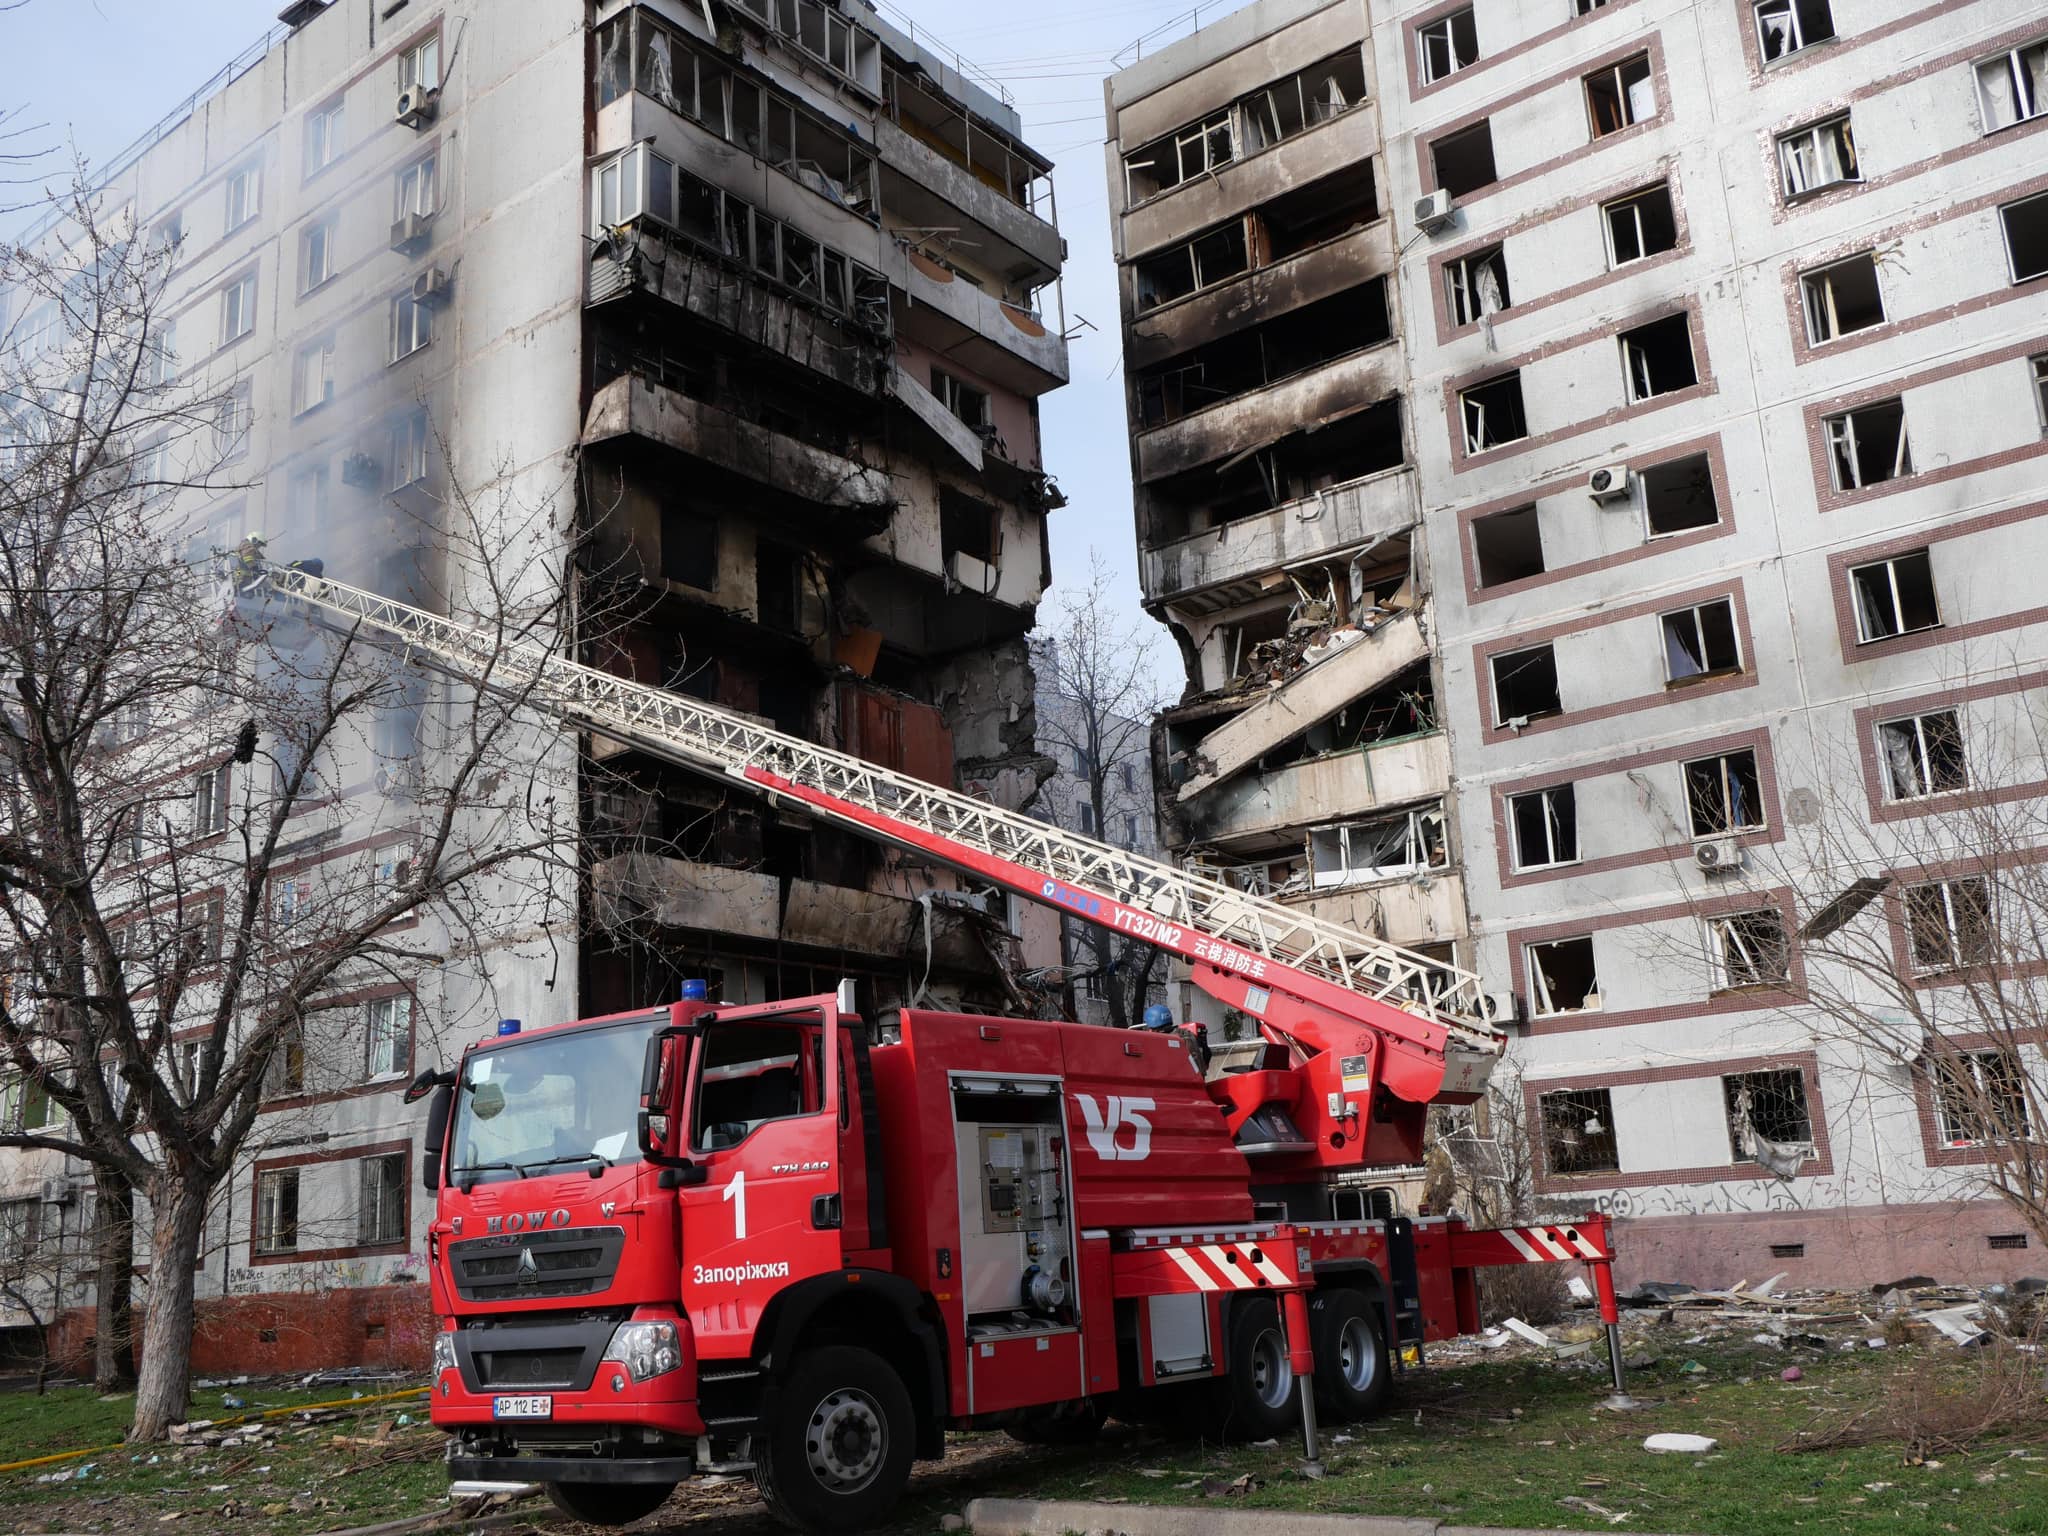 Рятувальна операція в Запоріжжі завершена: від російської атаки загалом 34 людини постраждали, з них троє дітей, одна людина померла (ФОТО) 8